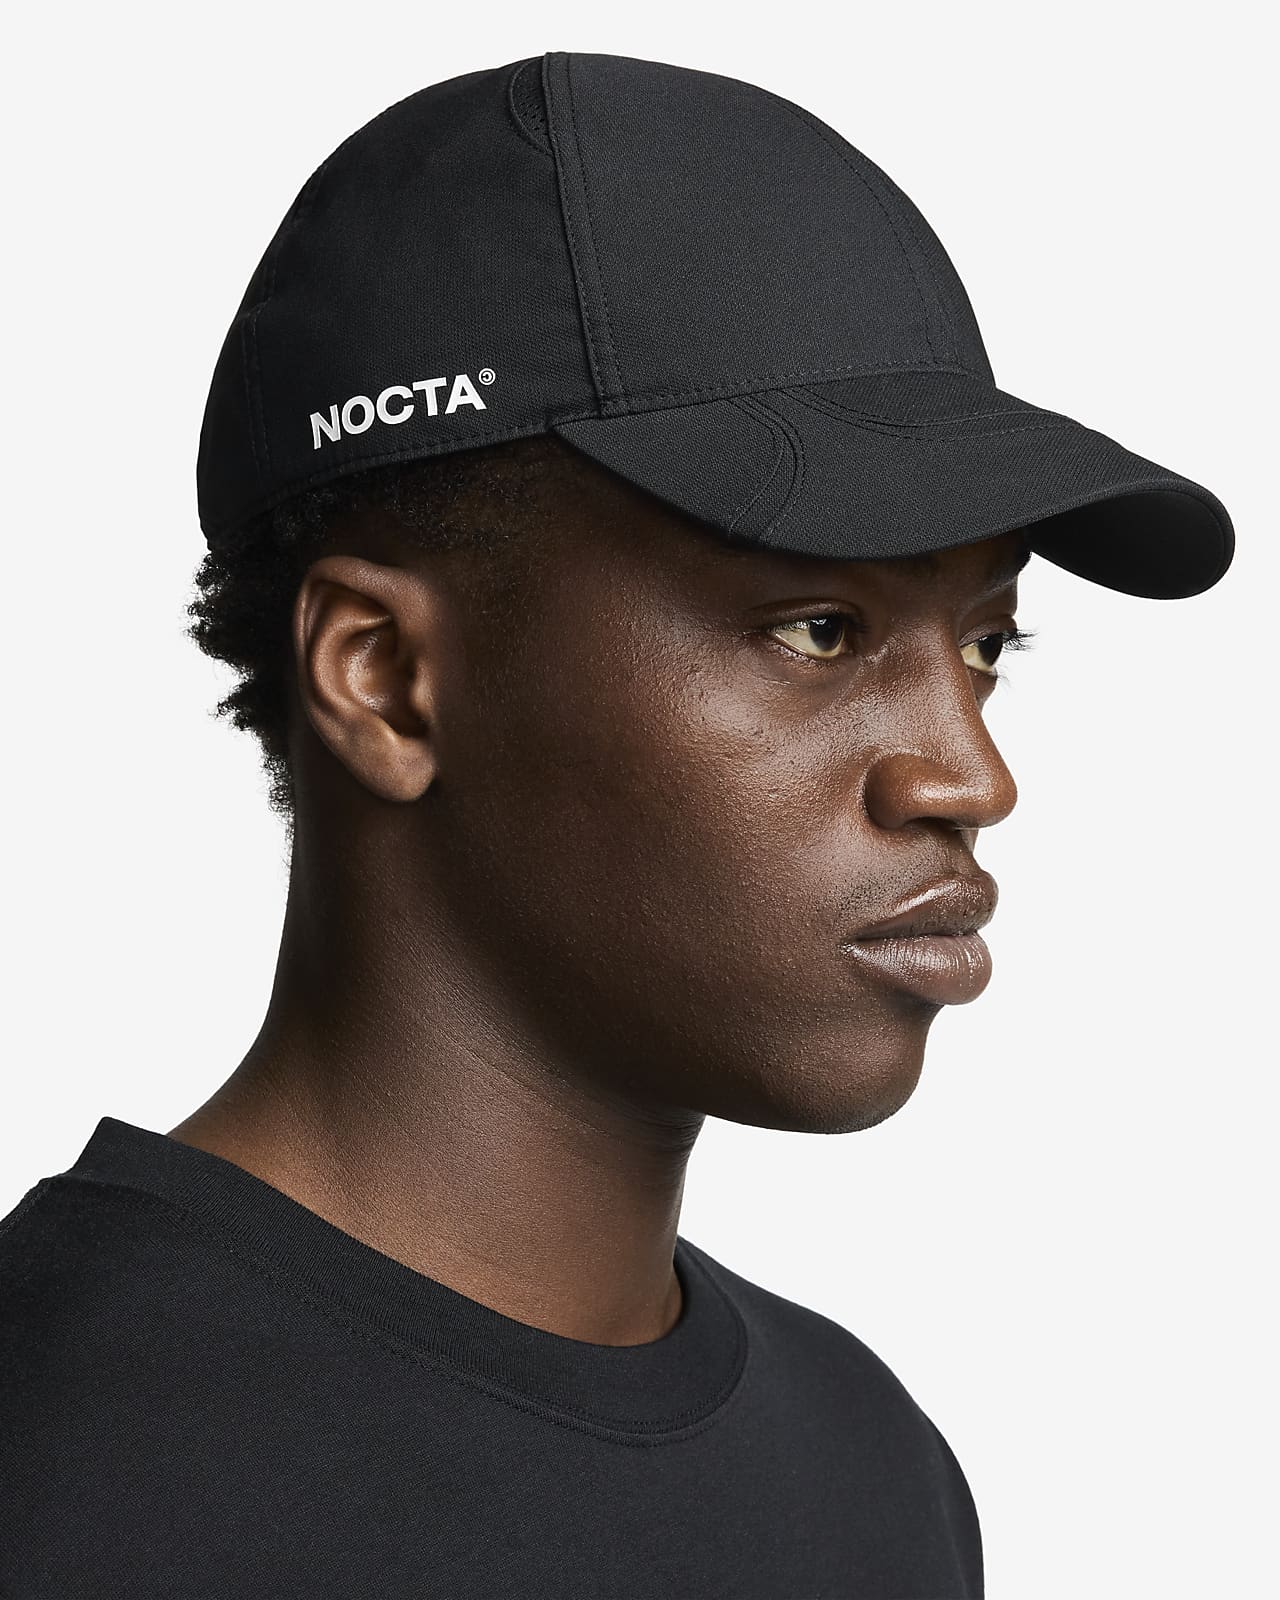 NOCTA Cap. Nike.com